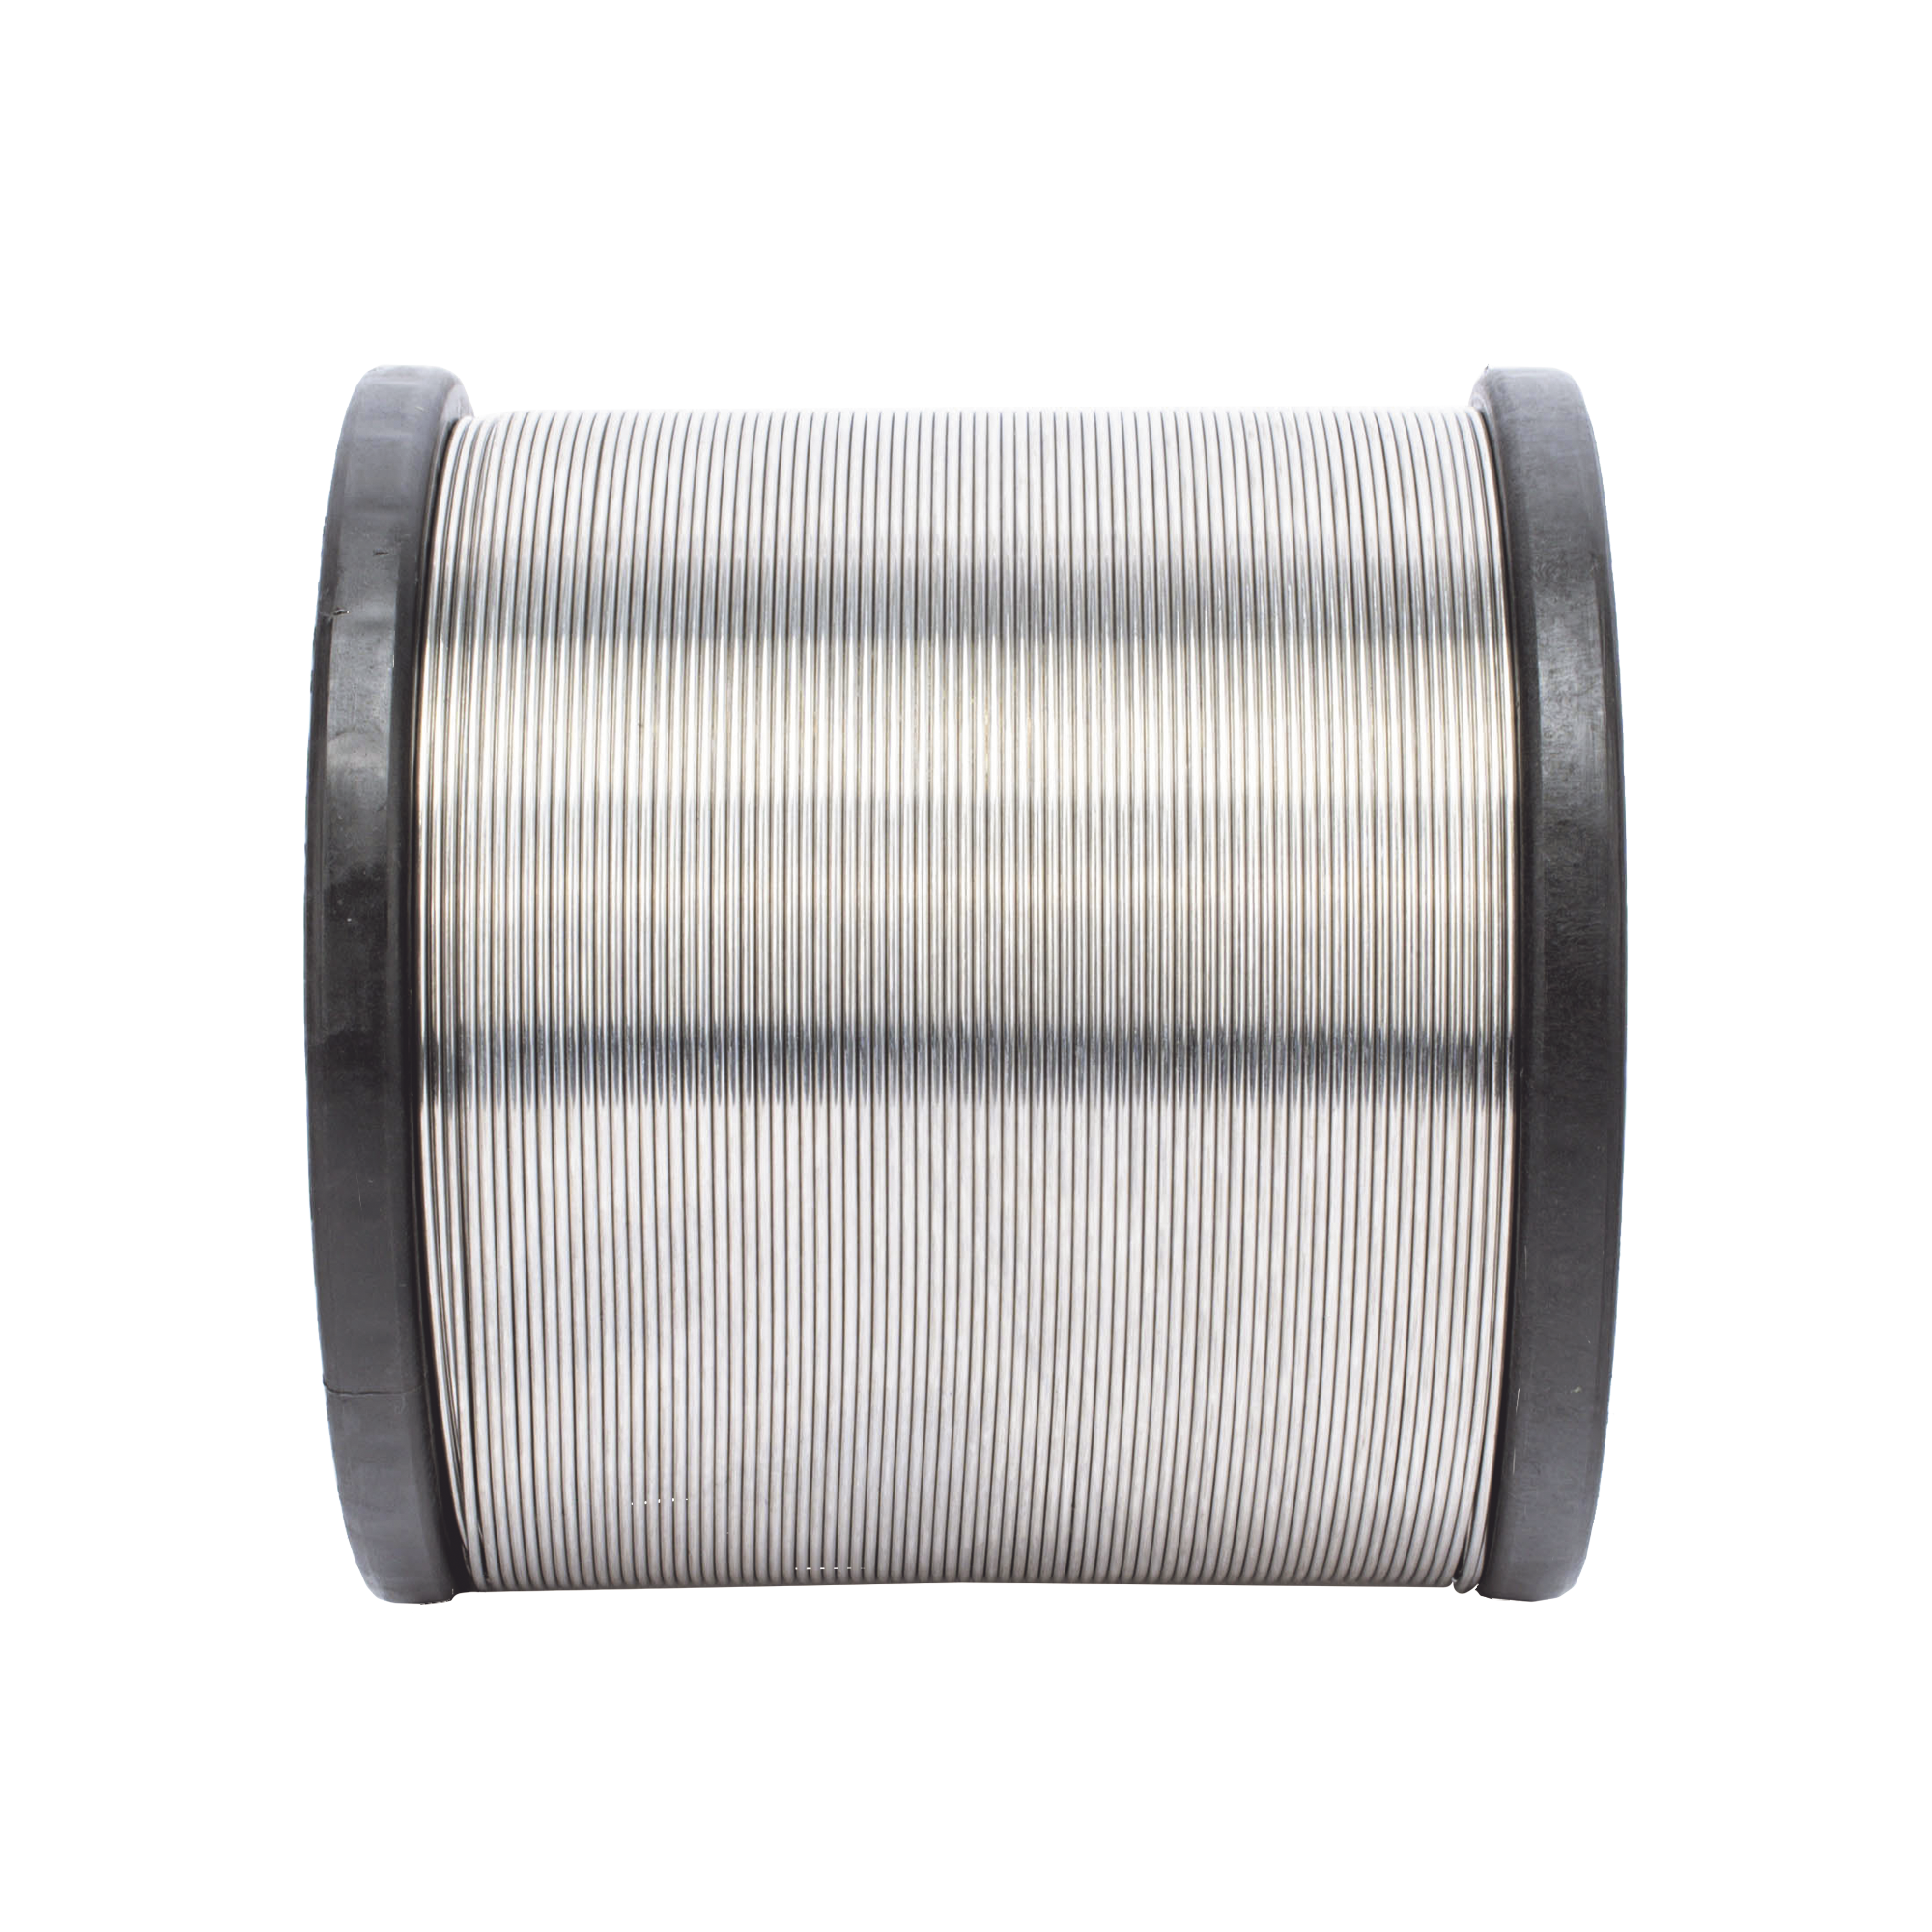 Cable de aluminio reforzado para Intemperie Ideal para cercas electrificadas calibre 16 - 500mts